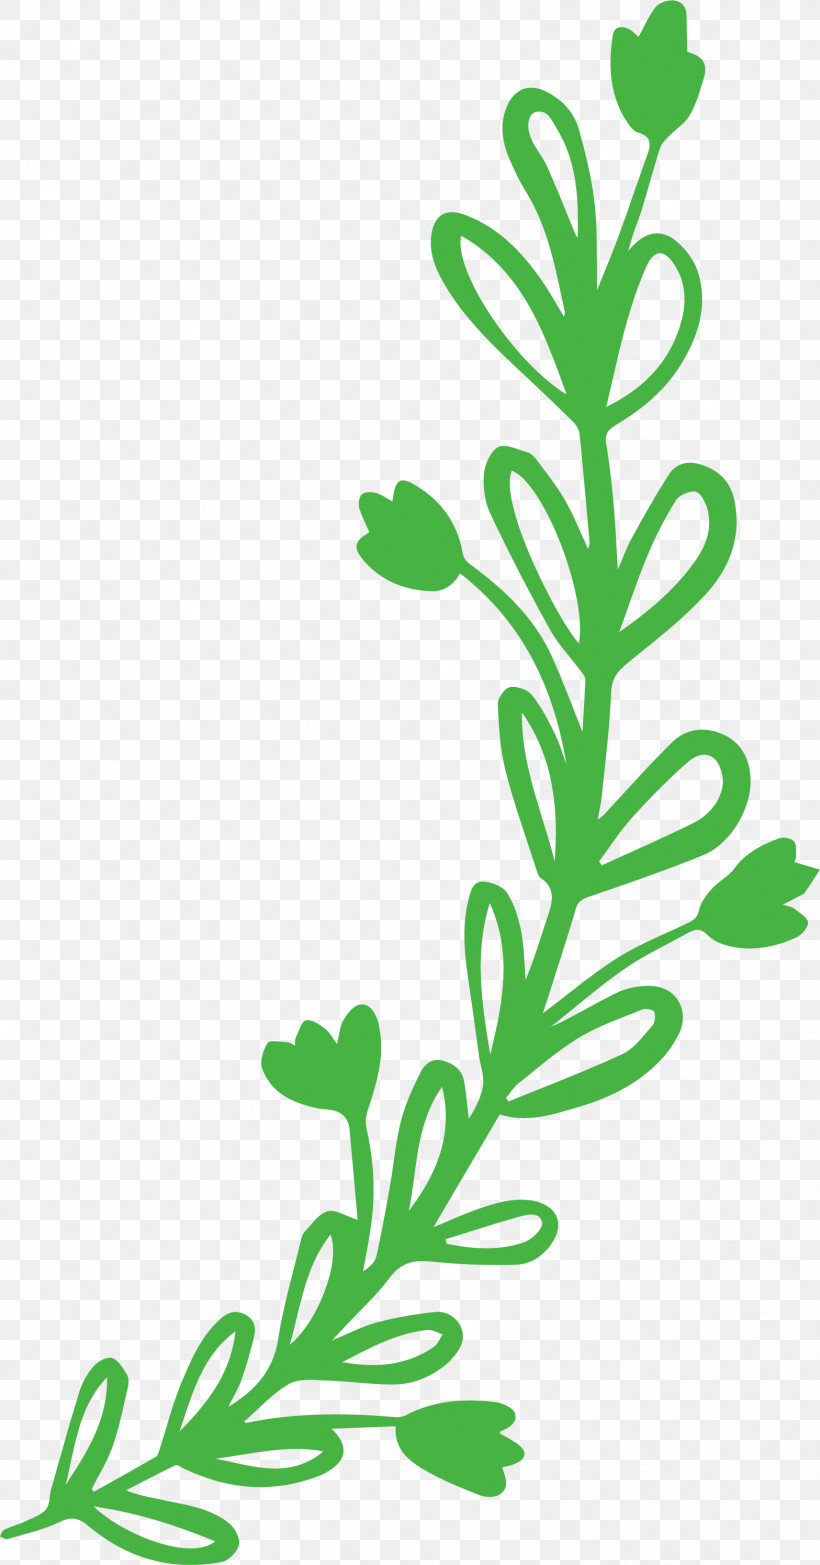 Plant Stem Leaf Leaf Vegetable Flower Meter, PNG, 1567x2991px, Plant Stem, Biology, Flower, Leaf, Leaf Vegetable Download Free